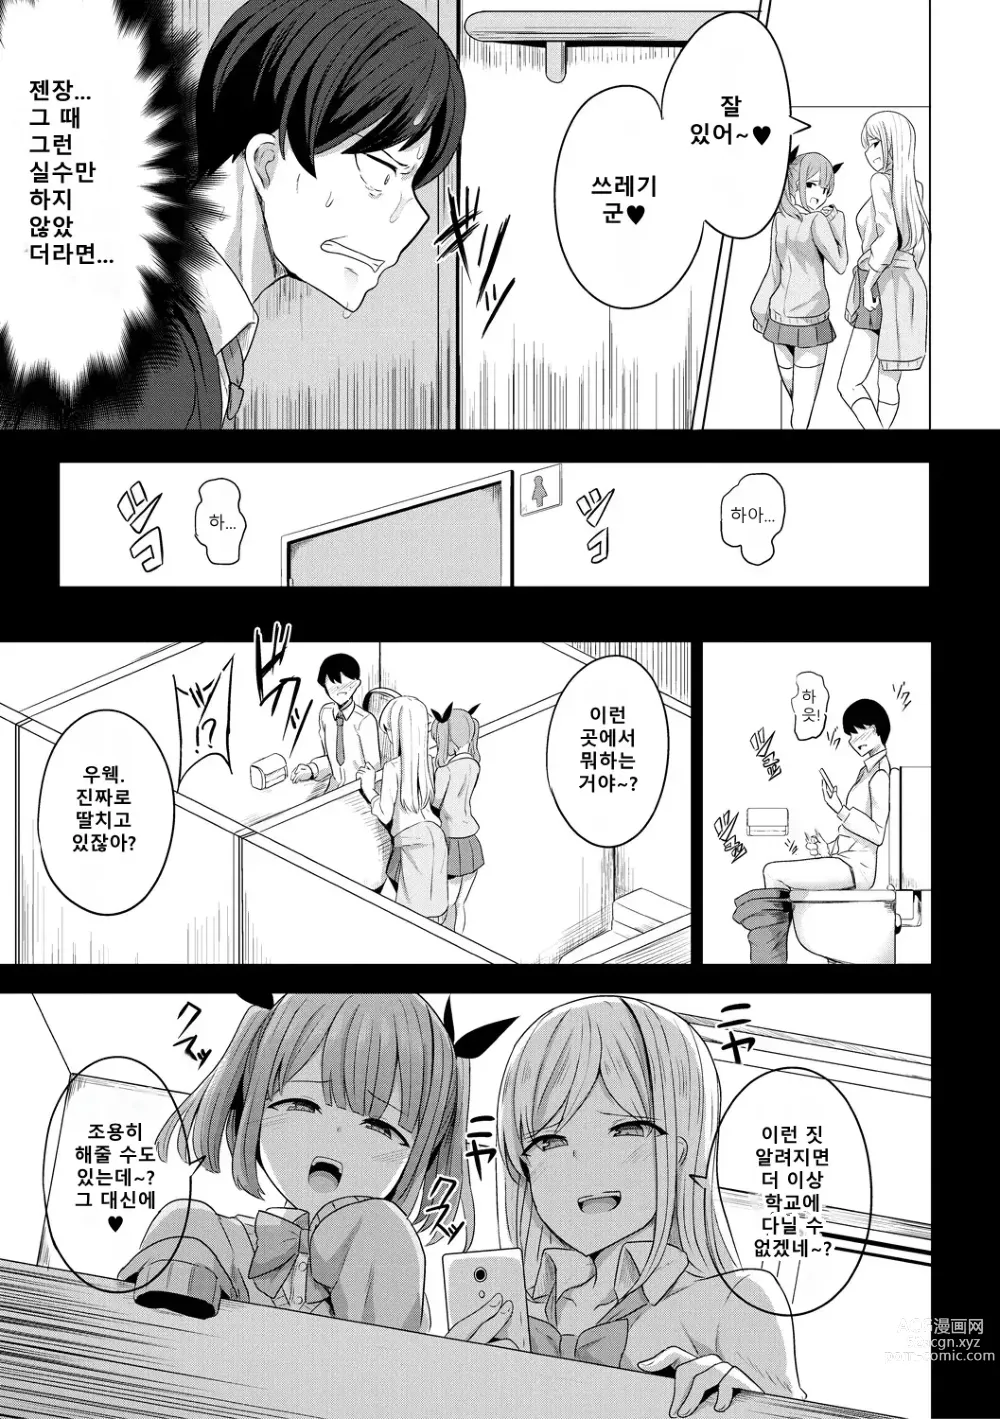 Page 3 of manga 최면복수 1화